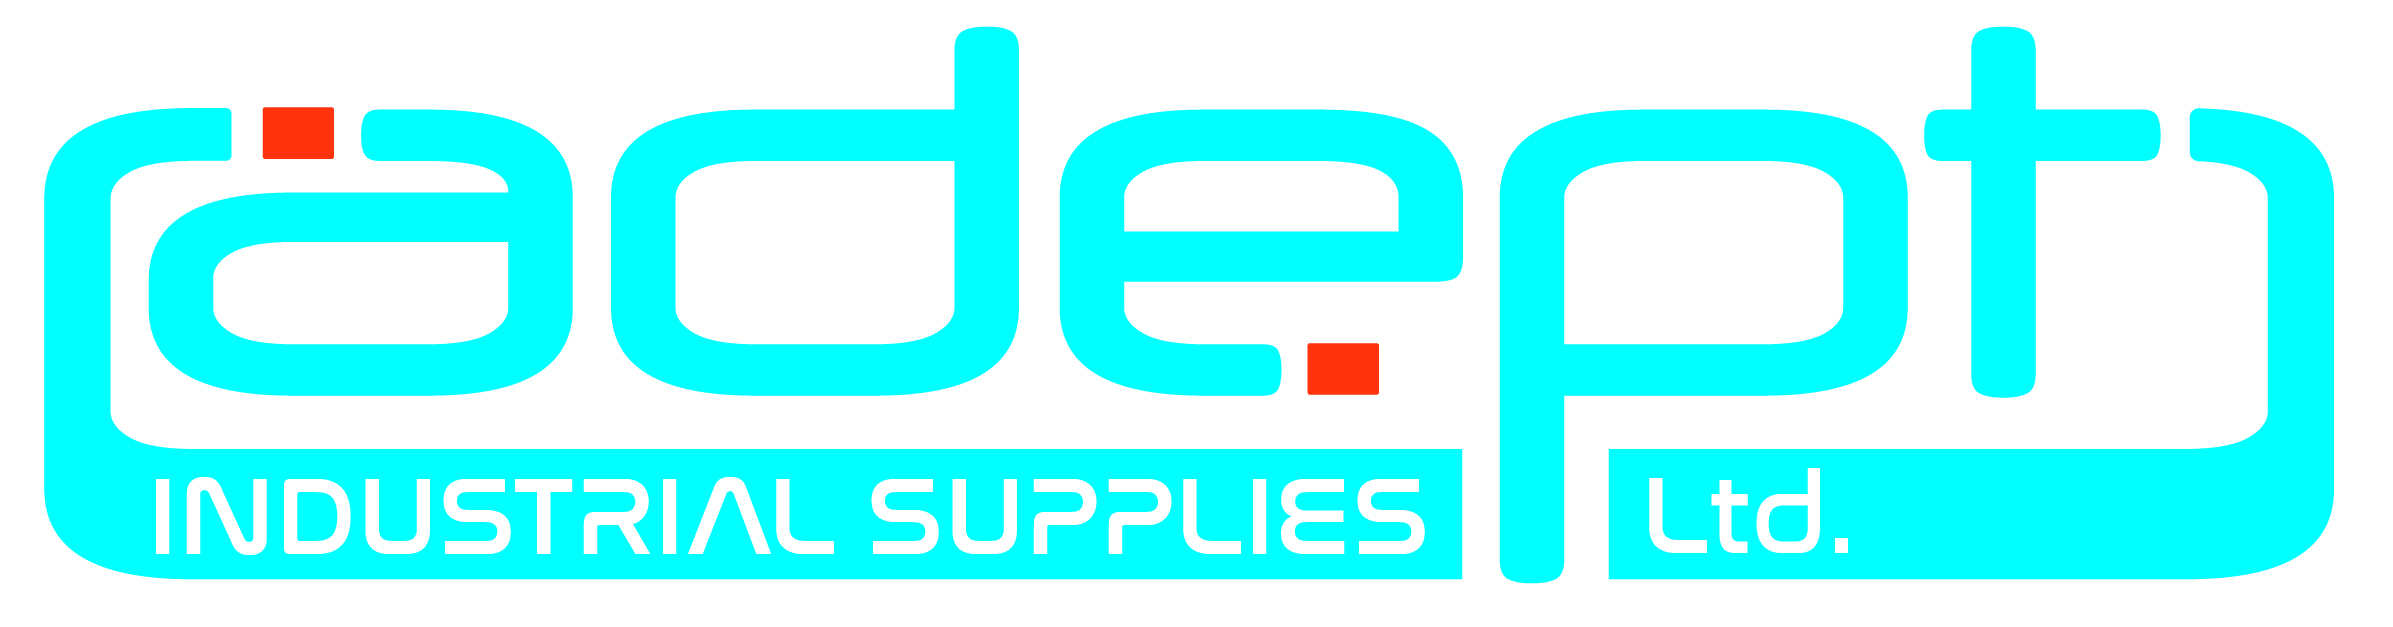 Adept Industrial Supplies Ltd